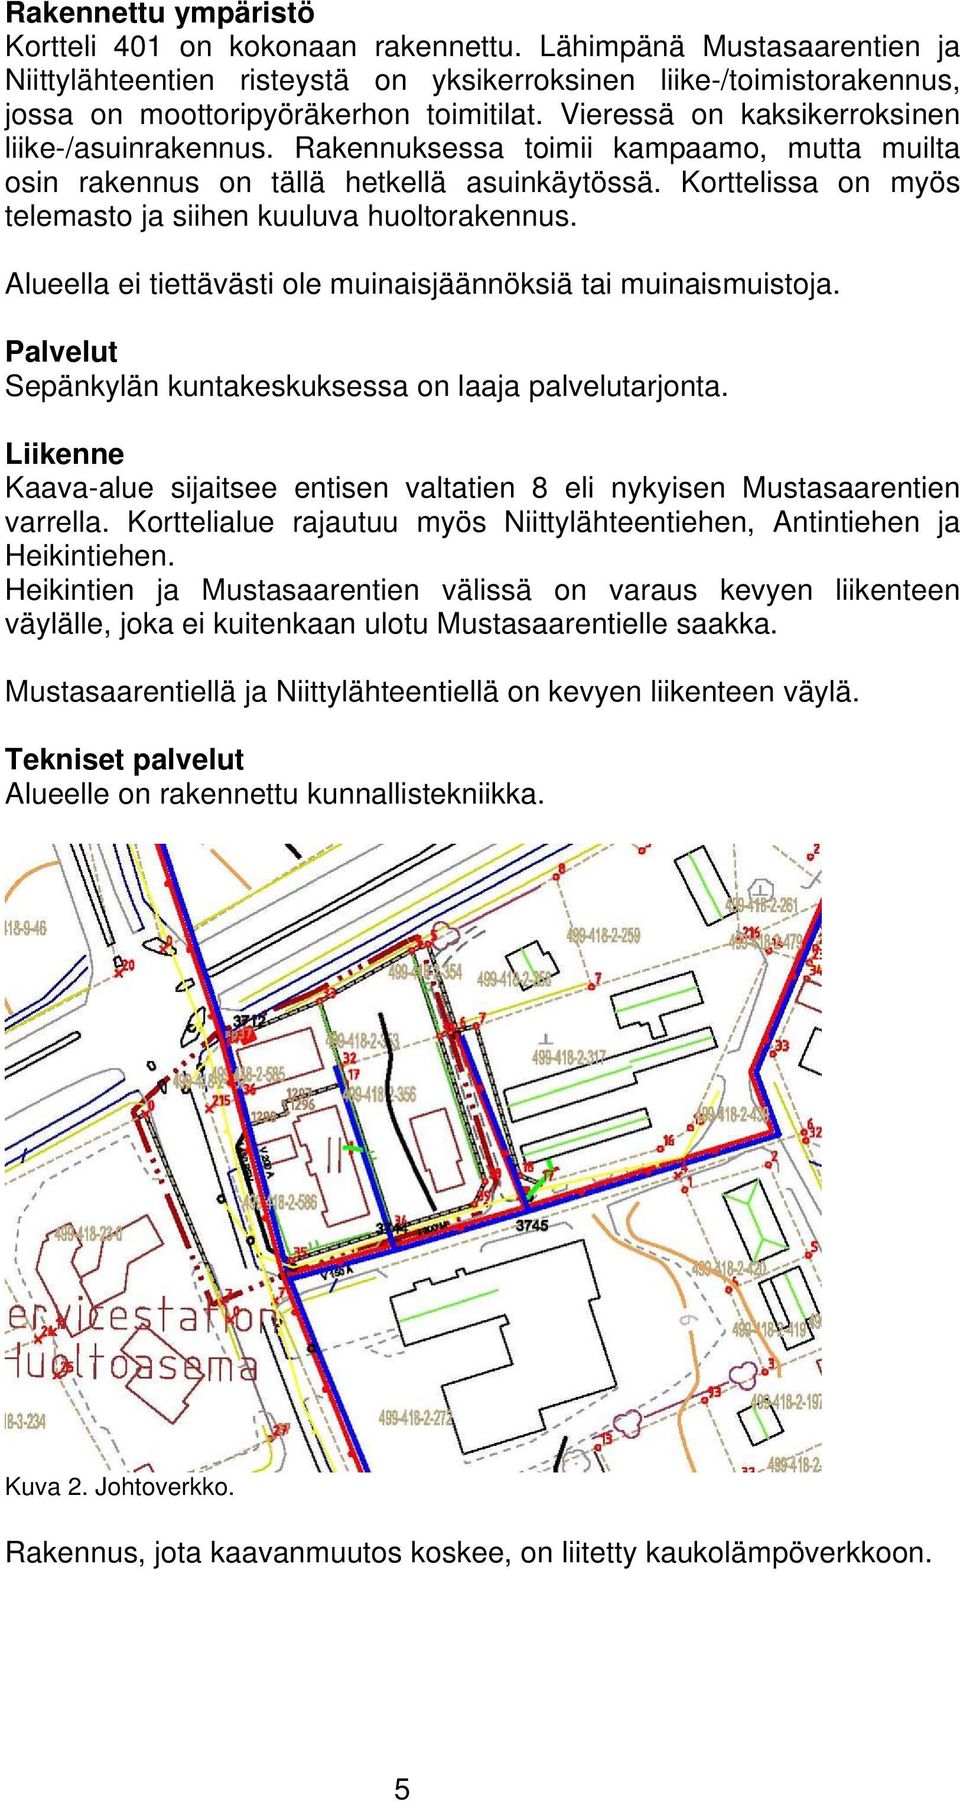 Korttelissa on myös telemasto ja siihen kuuluva huoltorakennus. Alueella ei tiettävästi ole muinaisjäännöksiä tai muinaismuistoja. Palvelut Sepänkylän kuntakeskuksessa on laaja palvelutarjonta.